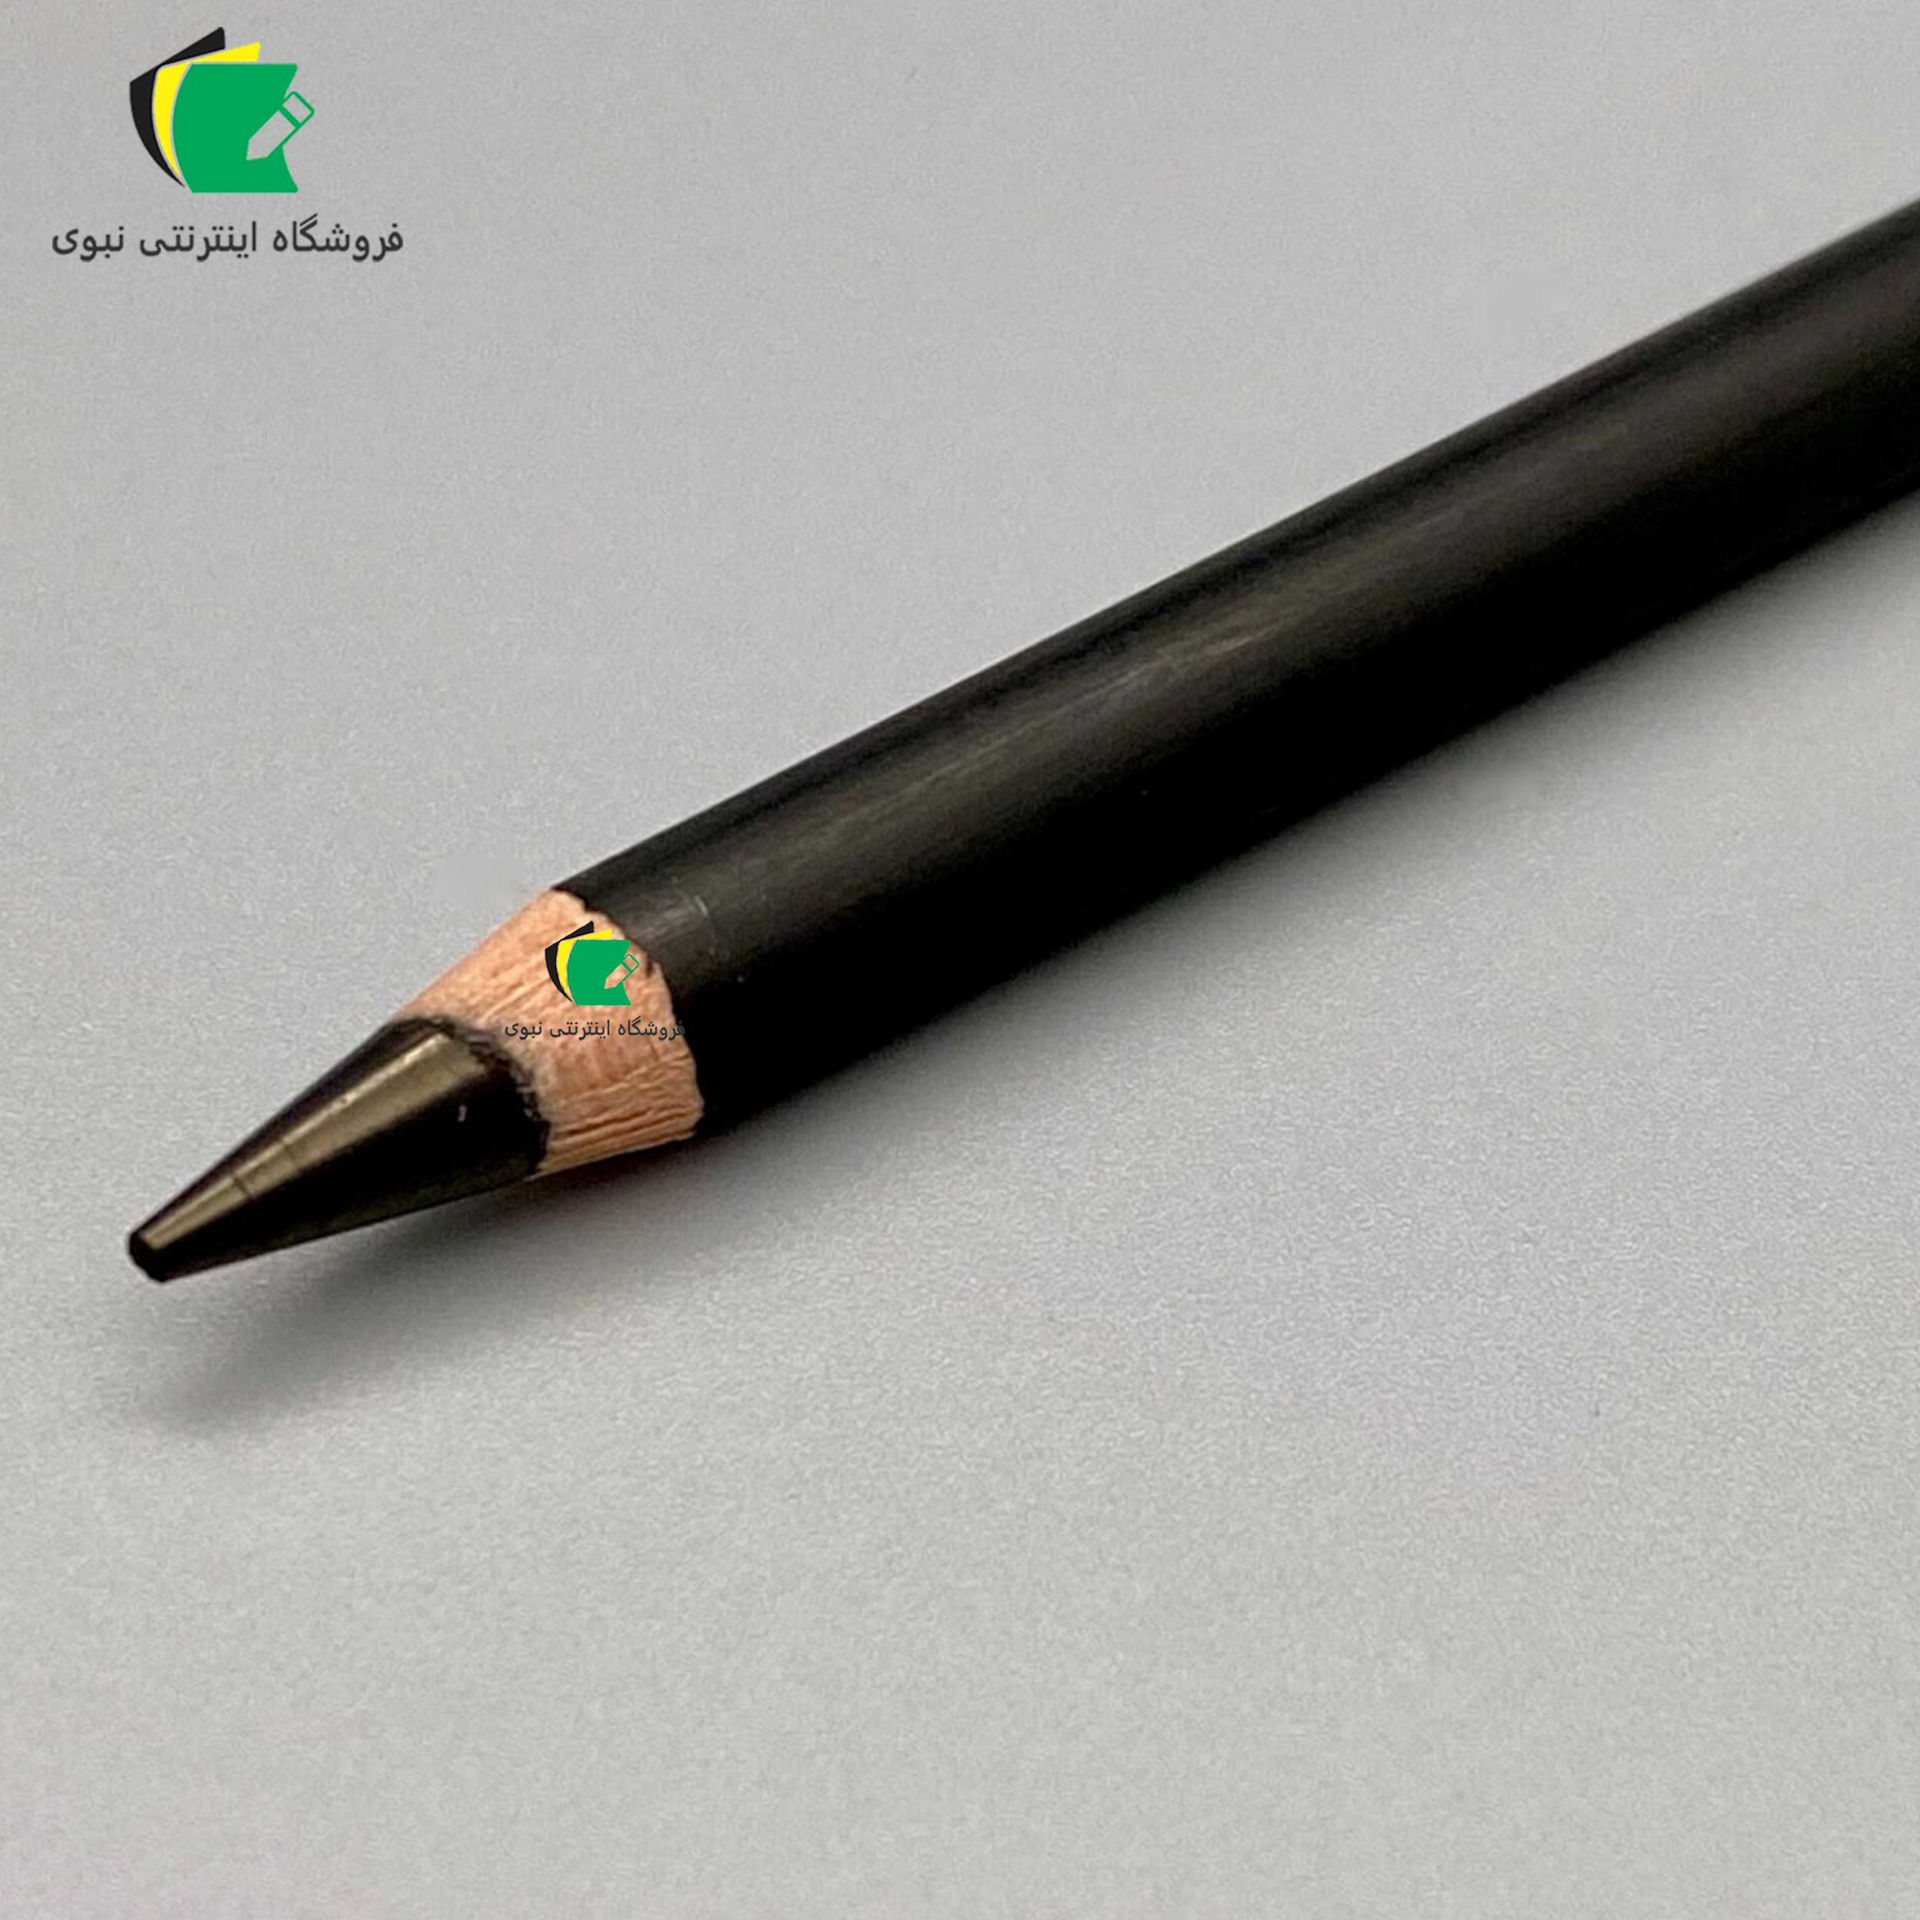 مداد کربنی لیرا مدل رامبراند مناسب برای طراحی و کنته و اسکیس